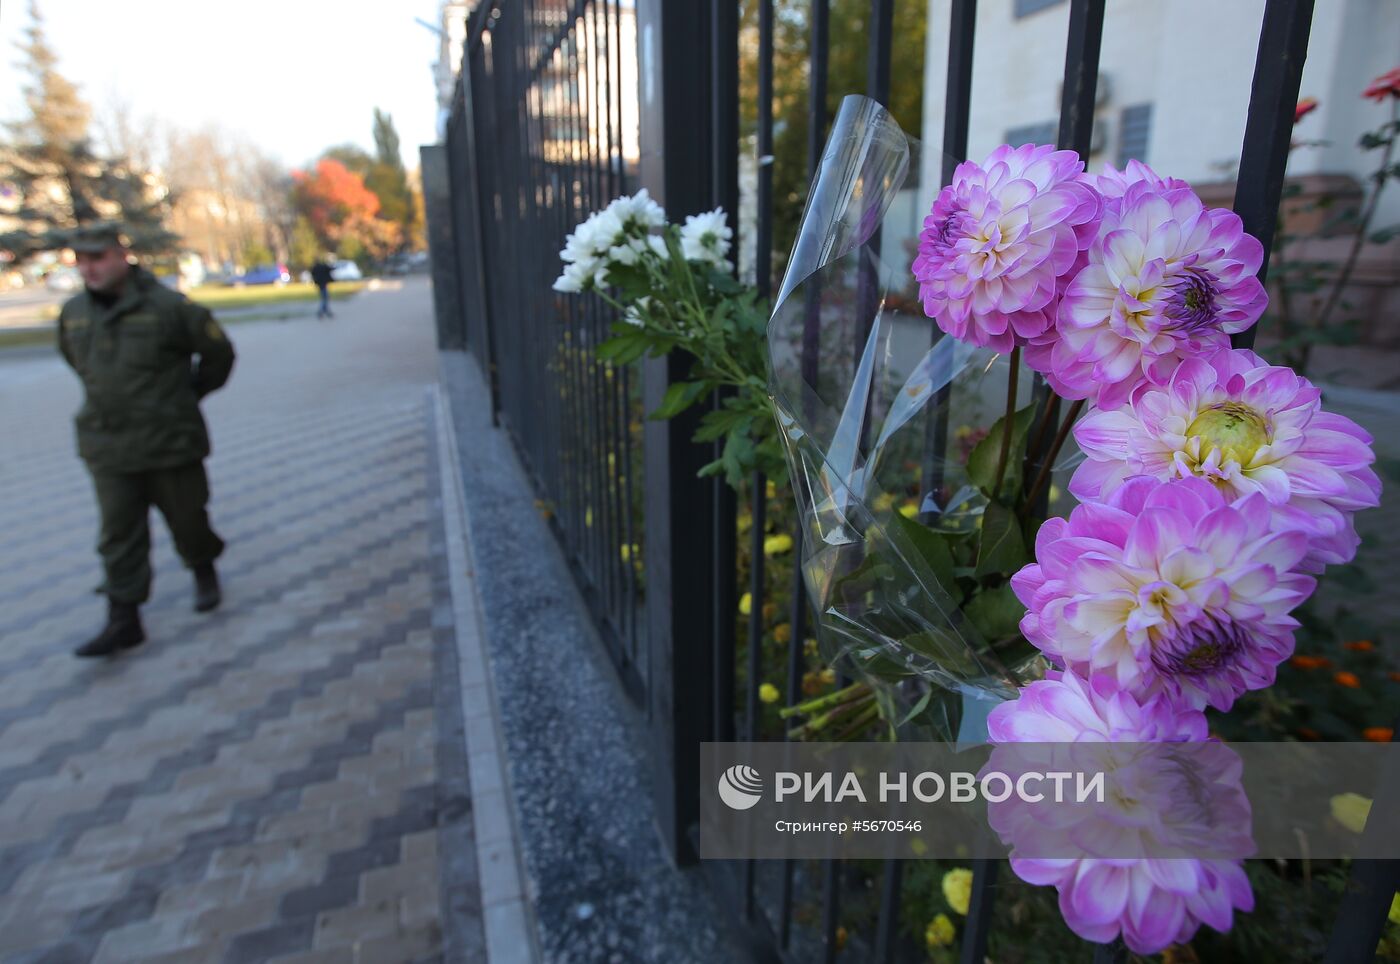 Цветы в Киеве в память о жертвах трагедии в Керчи